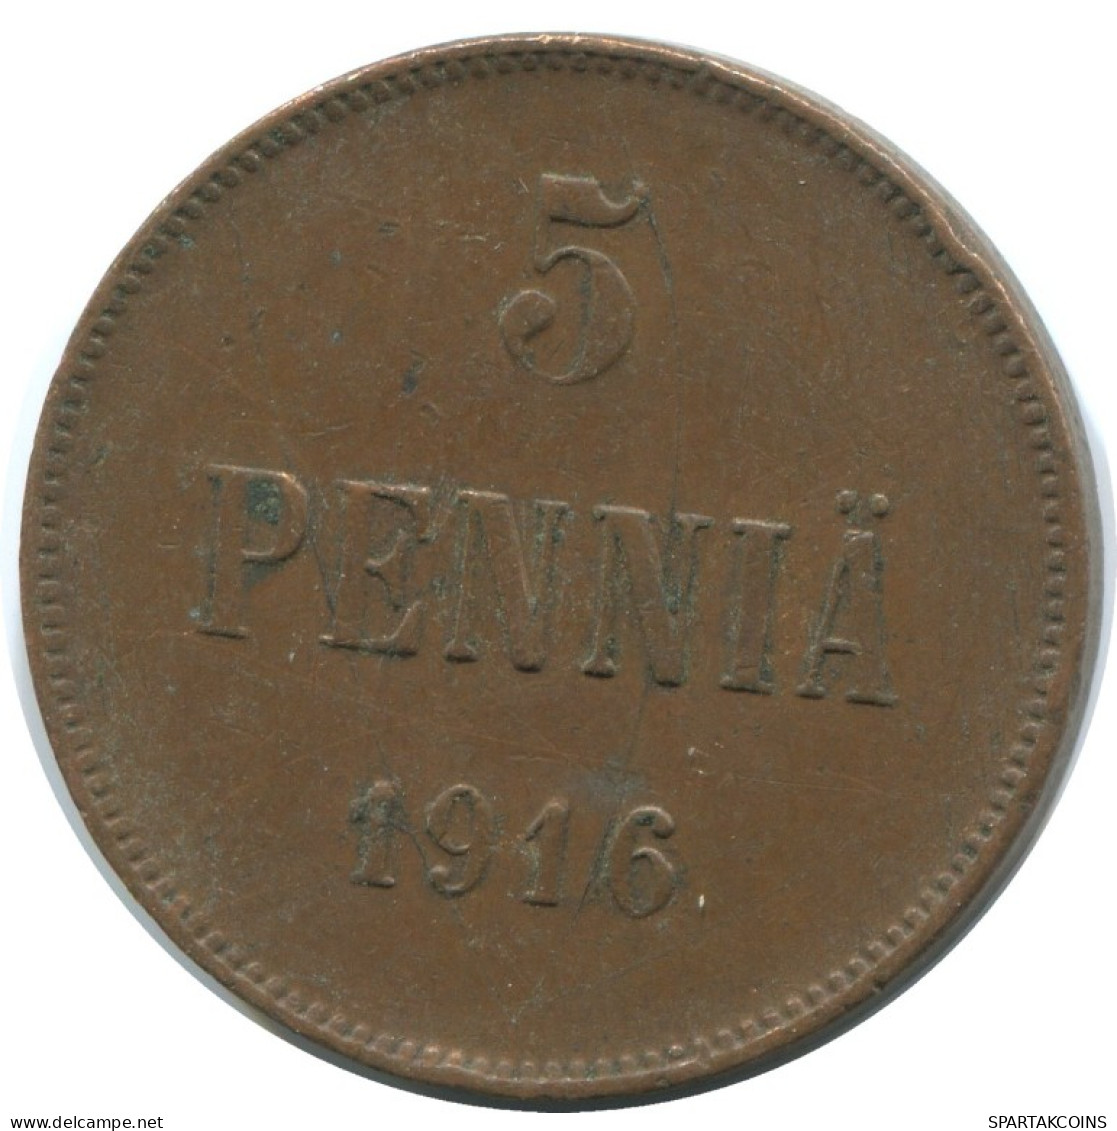 5 PENNIA 1916 FINLAND Coin RUSSIA EMPIRE #AB144.5.U.A - Finlande